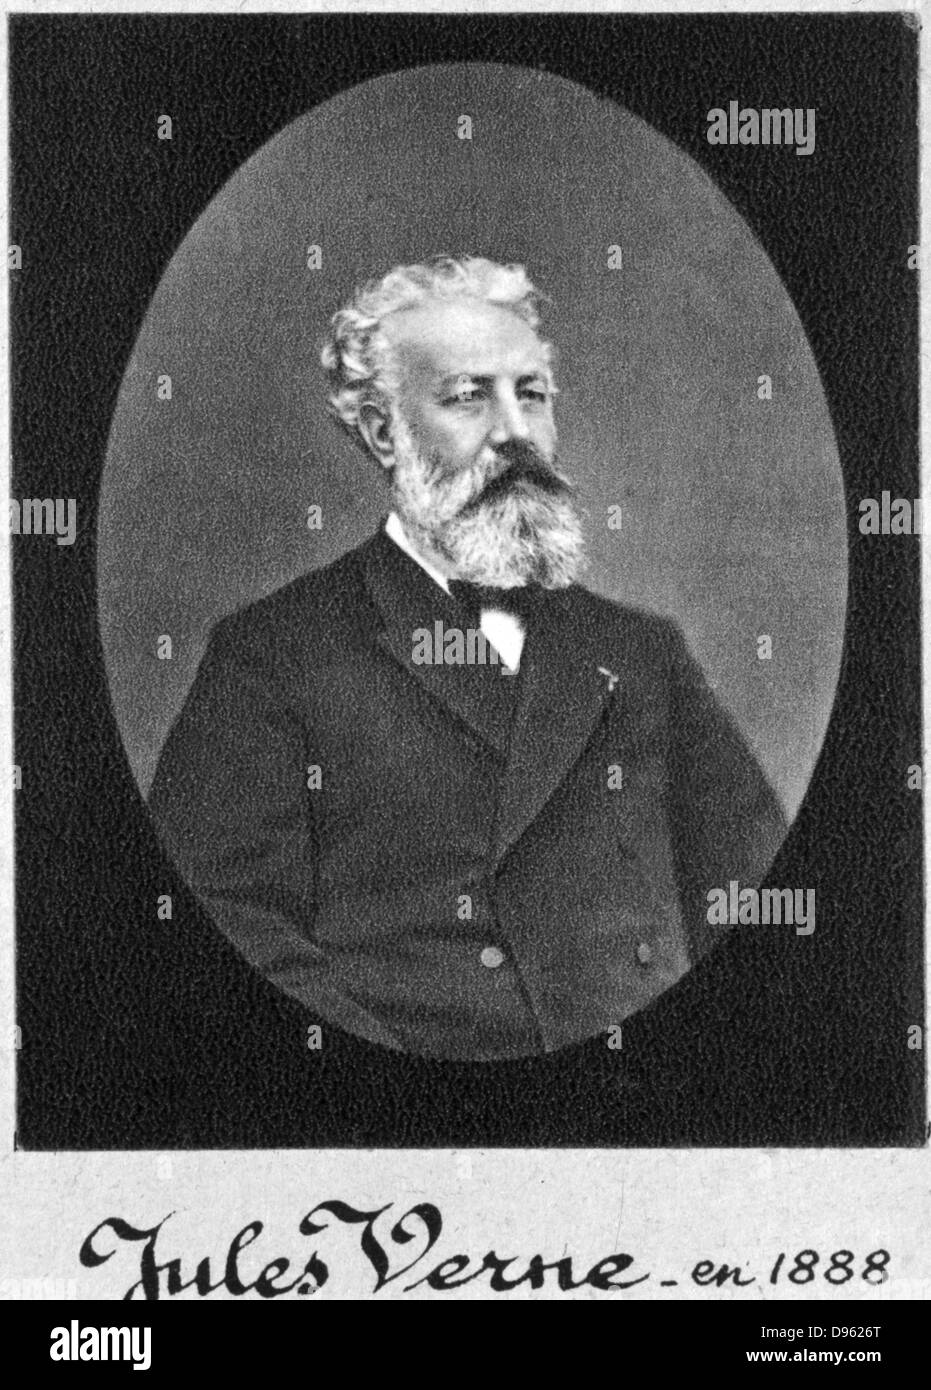 Jules Verne (1828-1905) im Jahre 1888. Französischer Schriftsteller. Zu fotografieren. Stockfoto